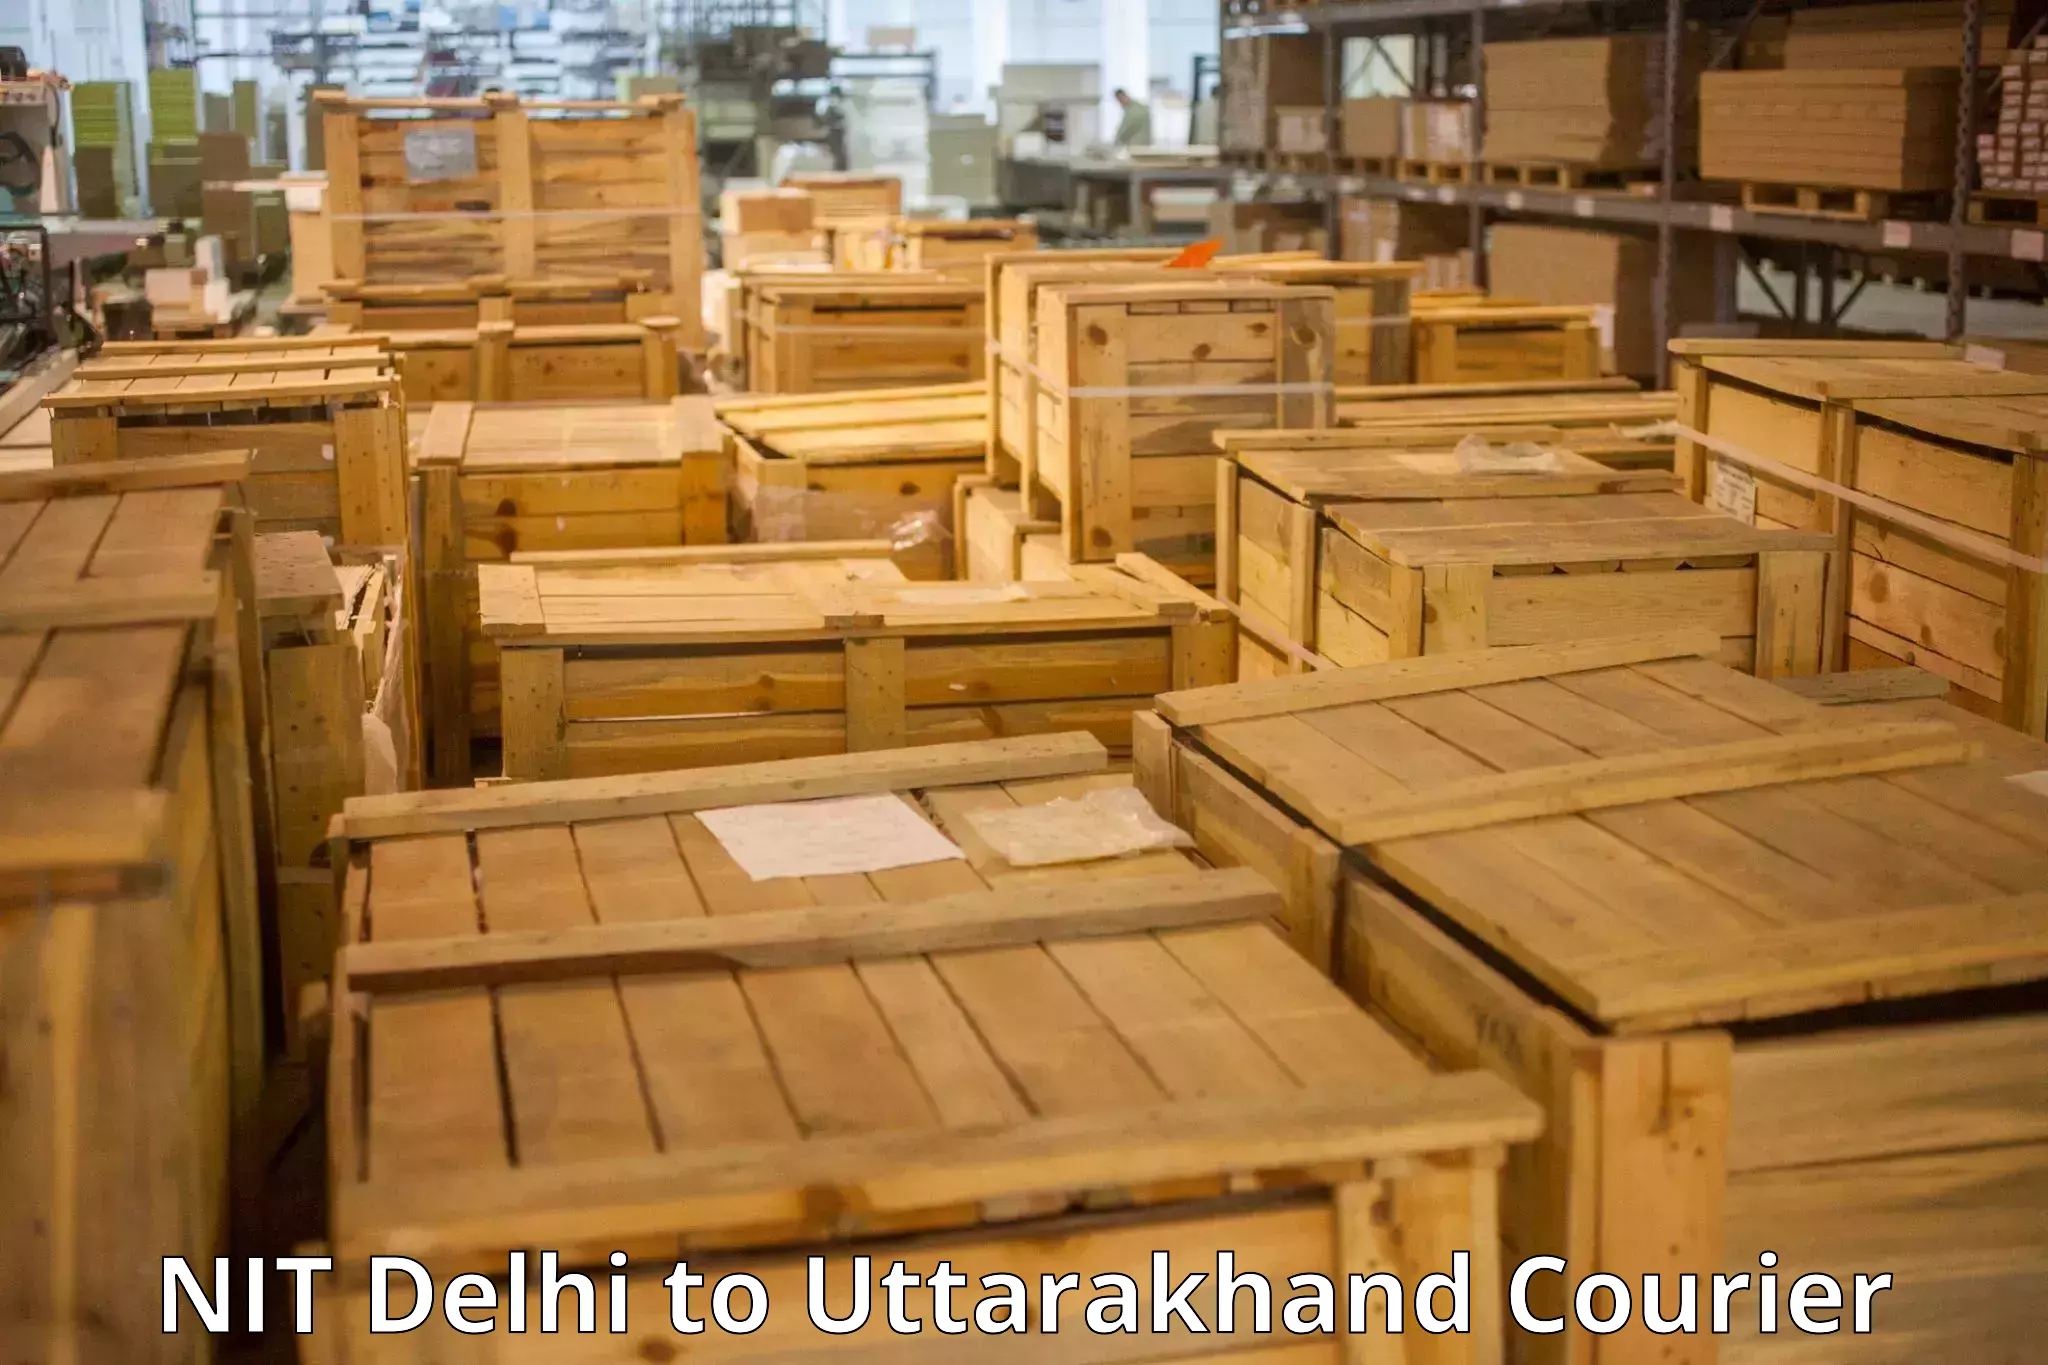 Door-to-door baggage service NIT Delhi to Pithoragarh